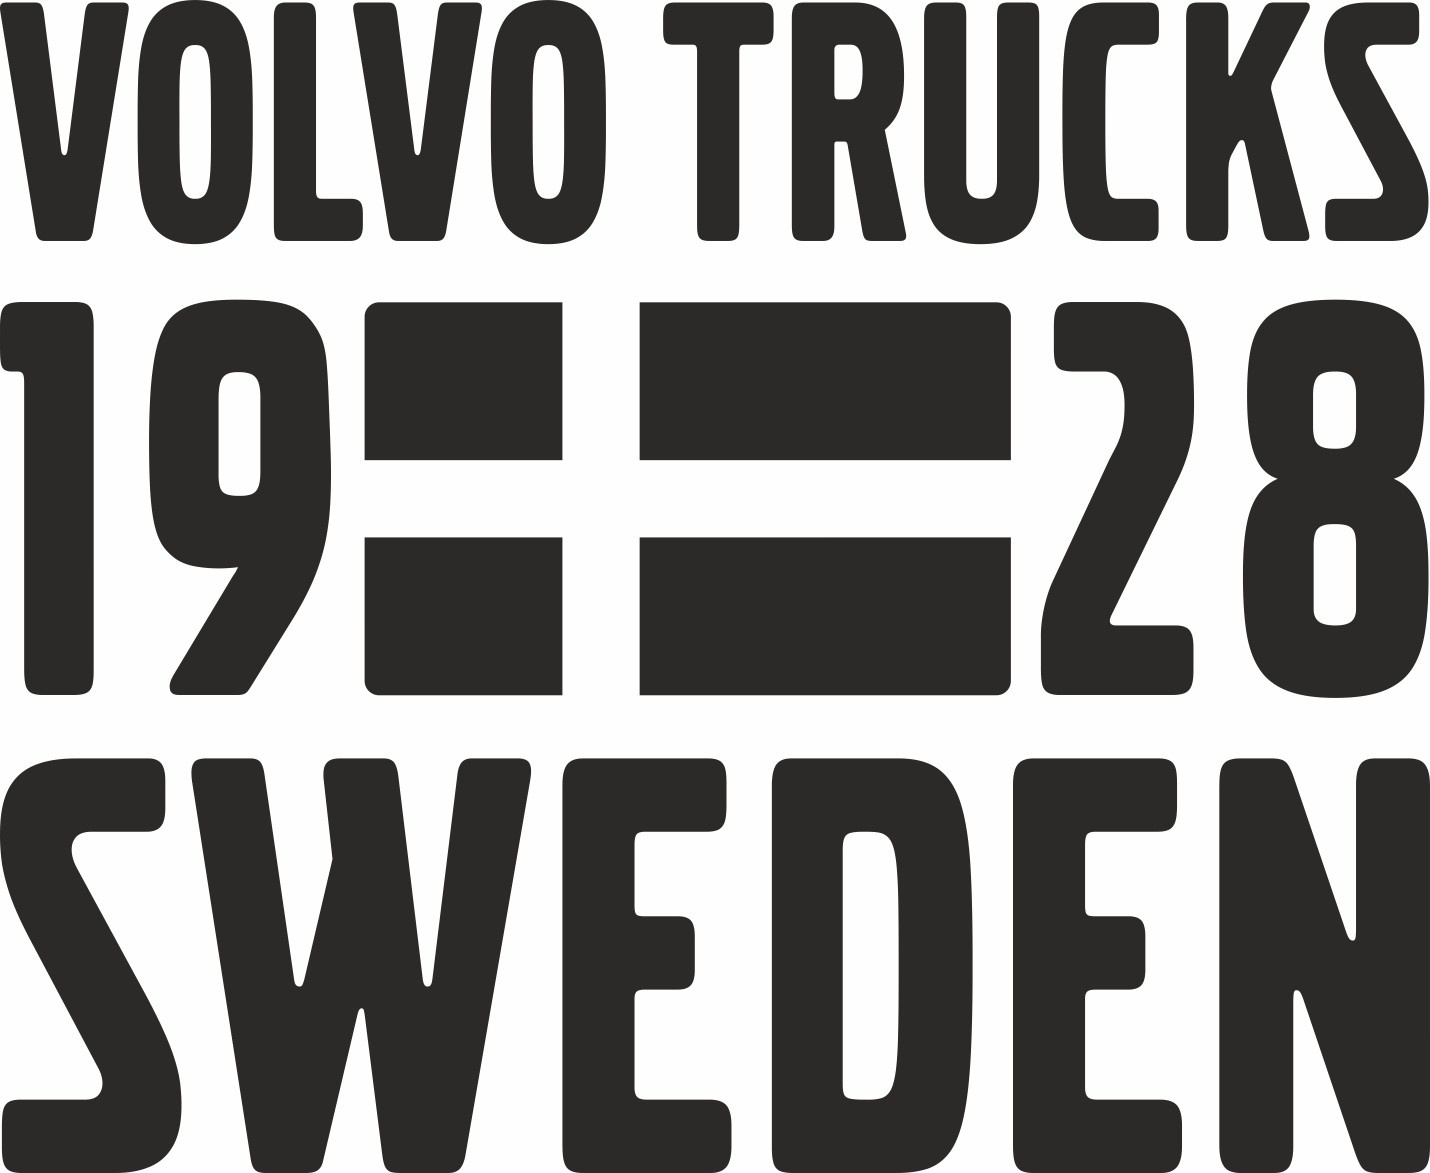 VOLVO TRUCKS 1928 SWEDEN, EDITION 2, NAKLEJKI, sticker, decals